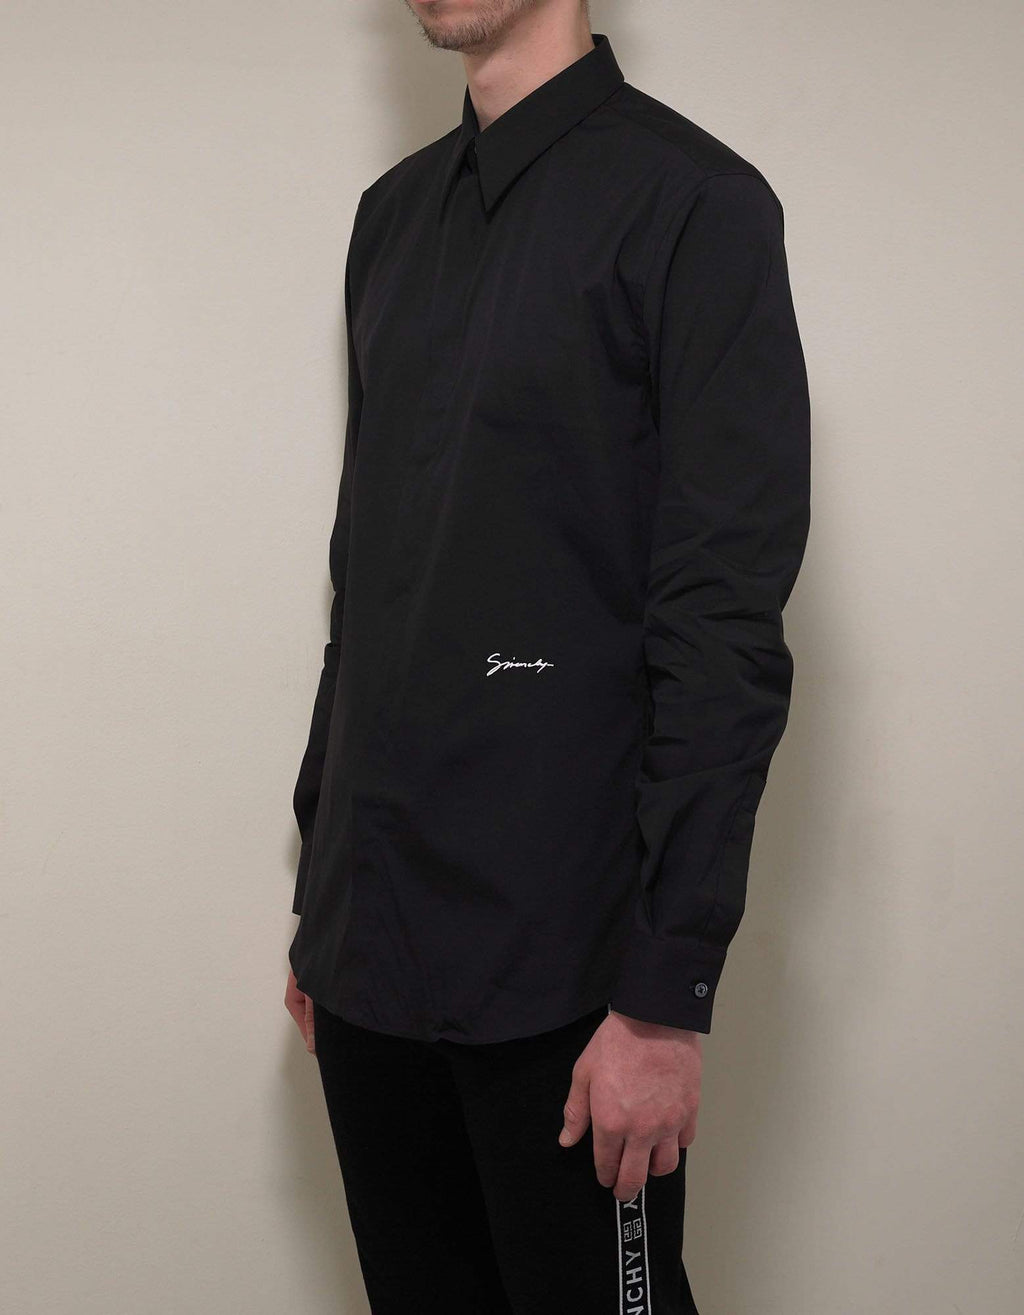 Givenchy Black Logo Signature Stretch-Cotton Shirt